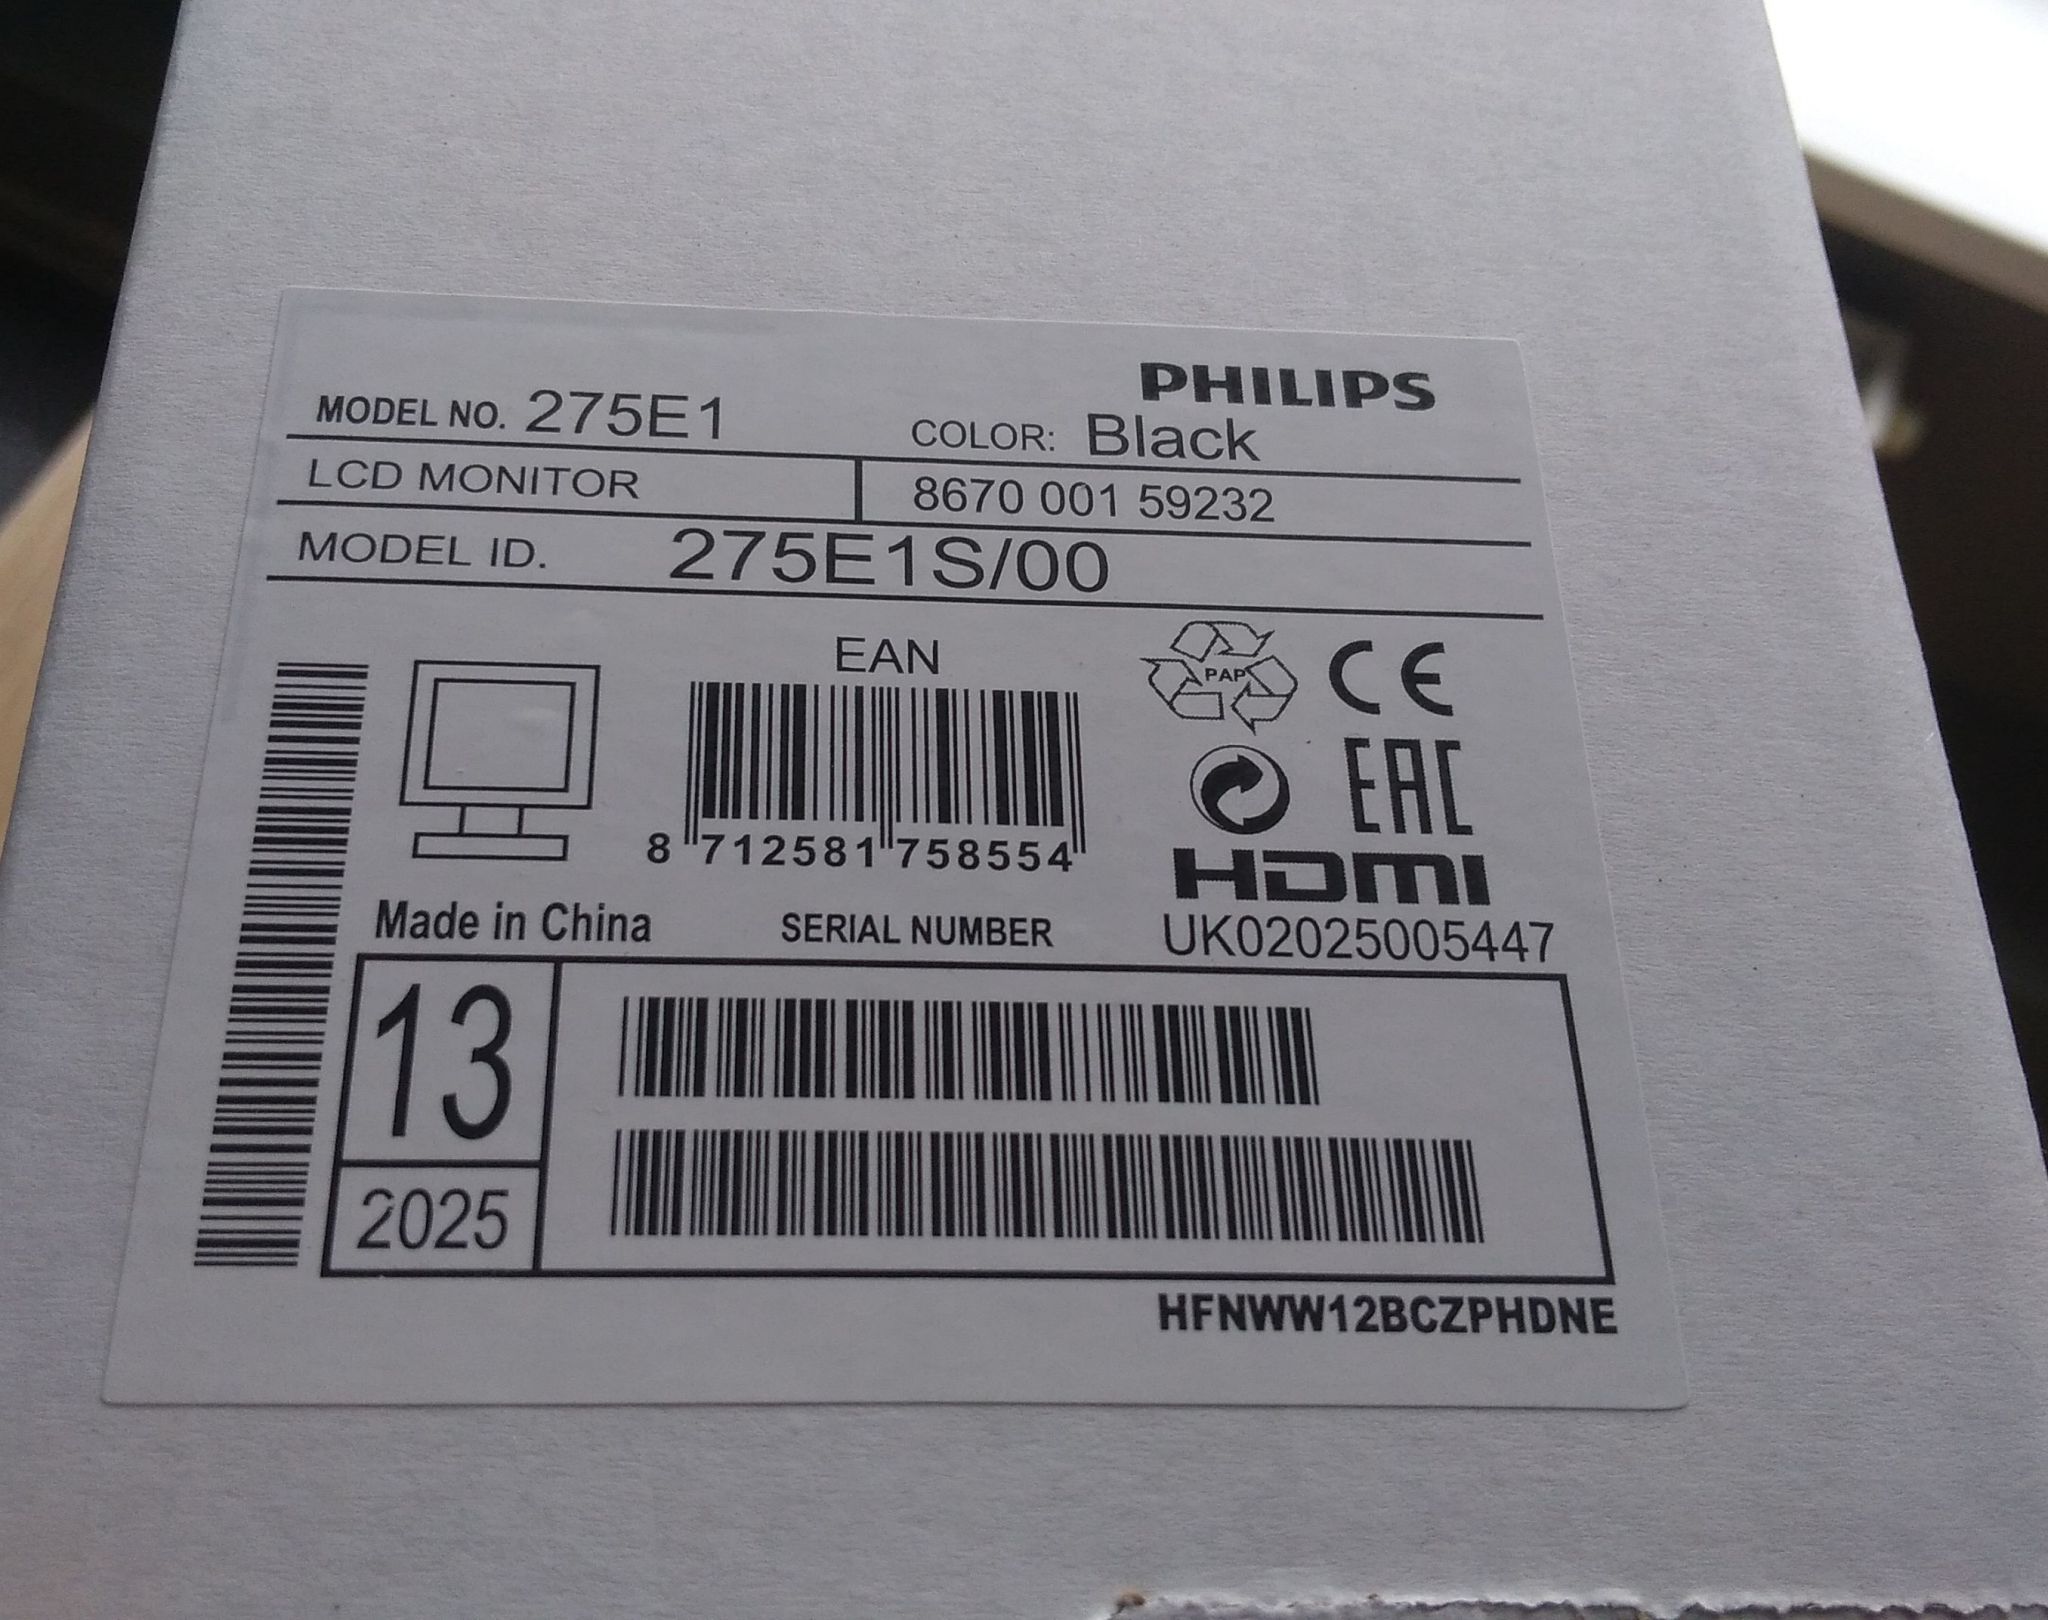 Philips 275e1s. Монитор Philips 275e1s/00 Black. Монитор 27" Philips 275e1s. Монитор Philips 275s1ae [275s1ae/00]. Philips 27m1c5500vl коробка.